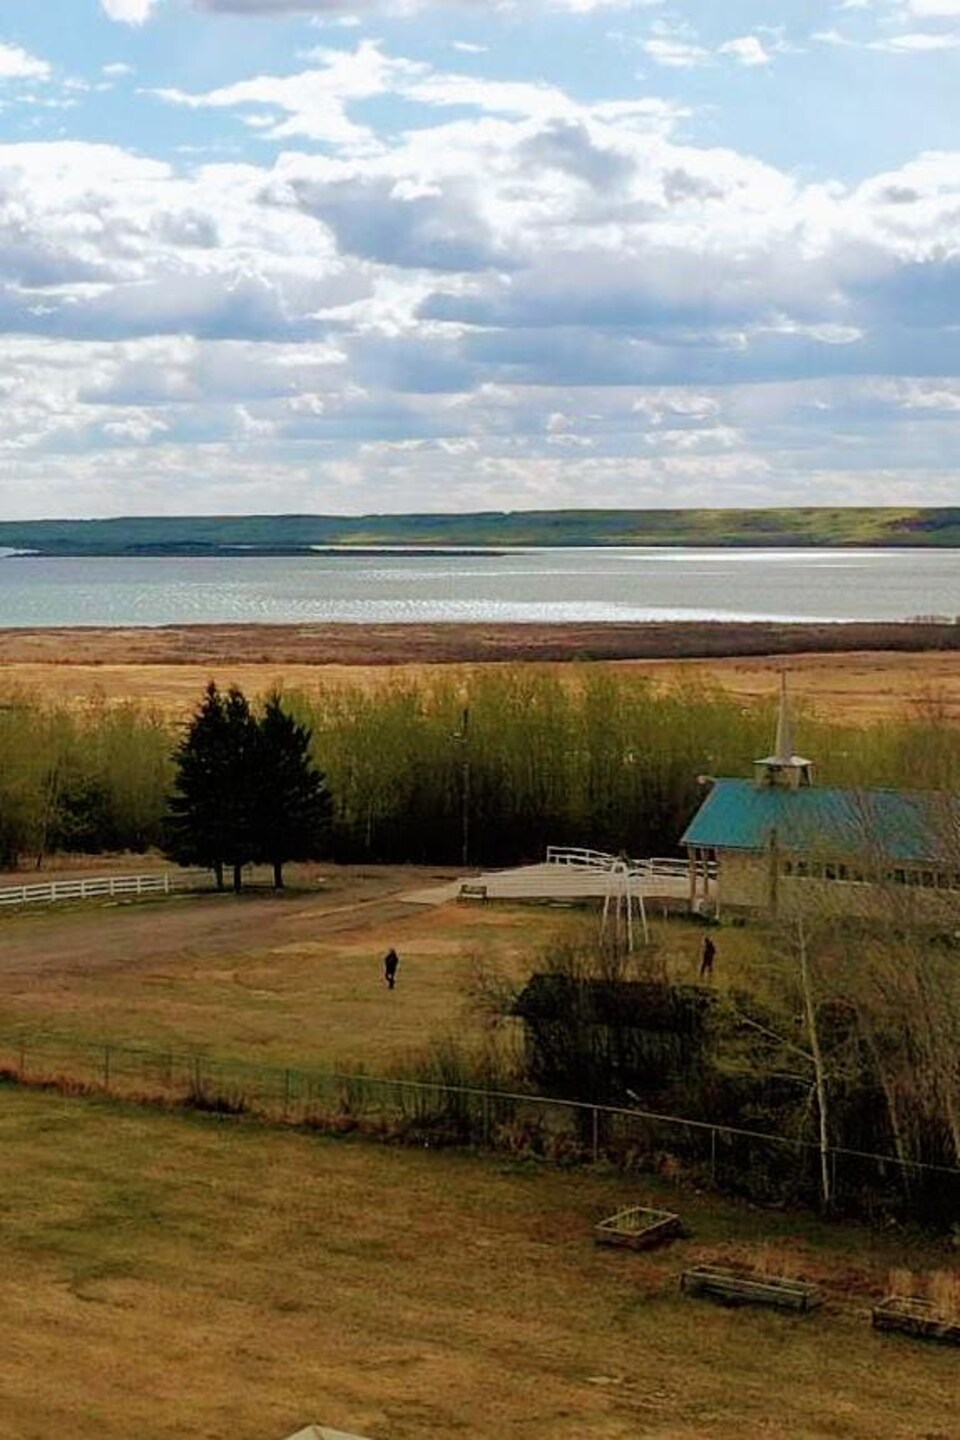 Paysage campagnard : quelques terres sur le bord d'un lac.